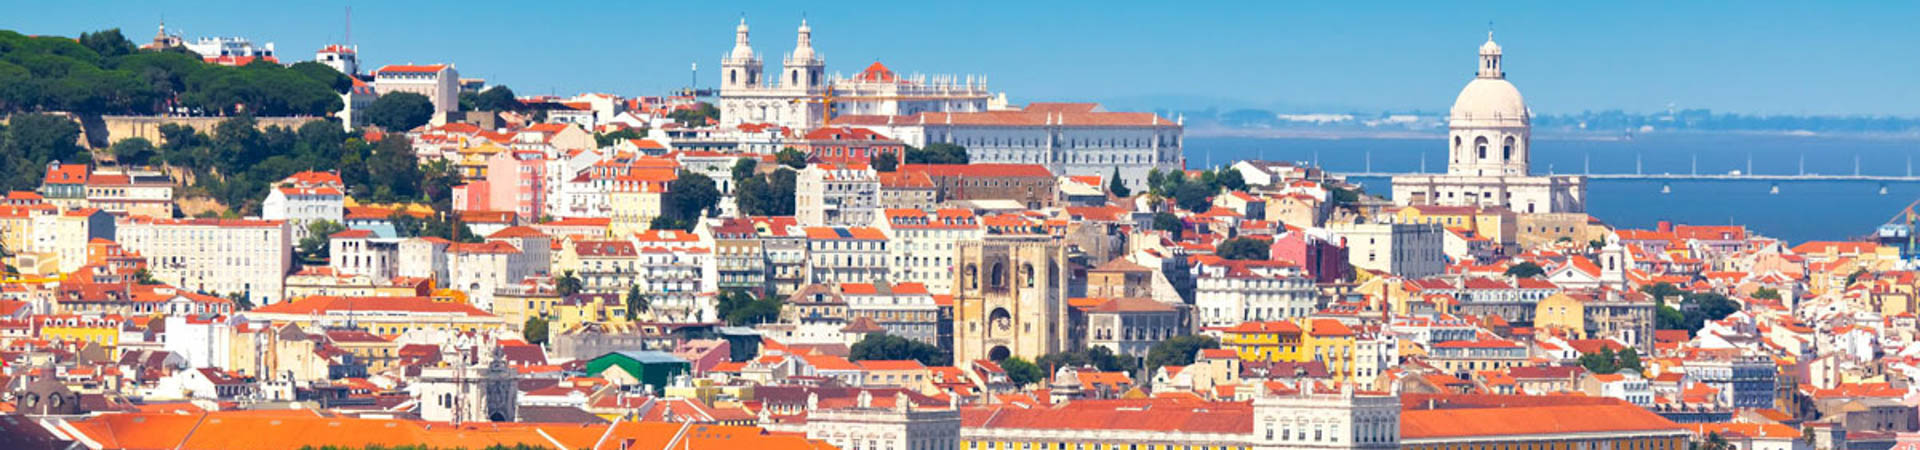 Lisbon (Cascais), Portugal